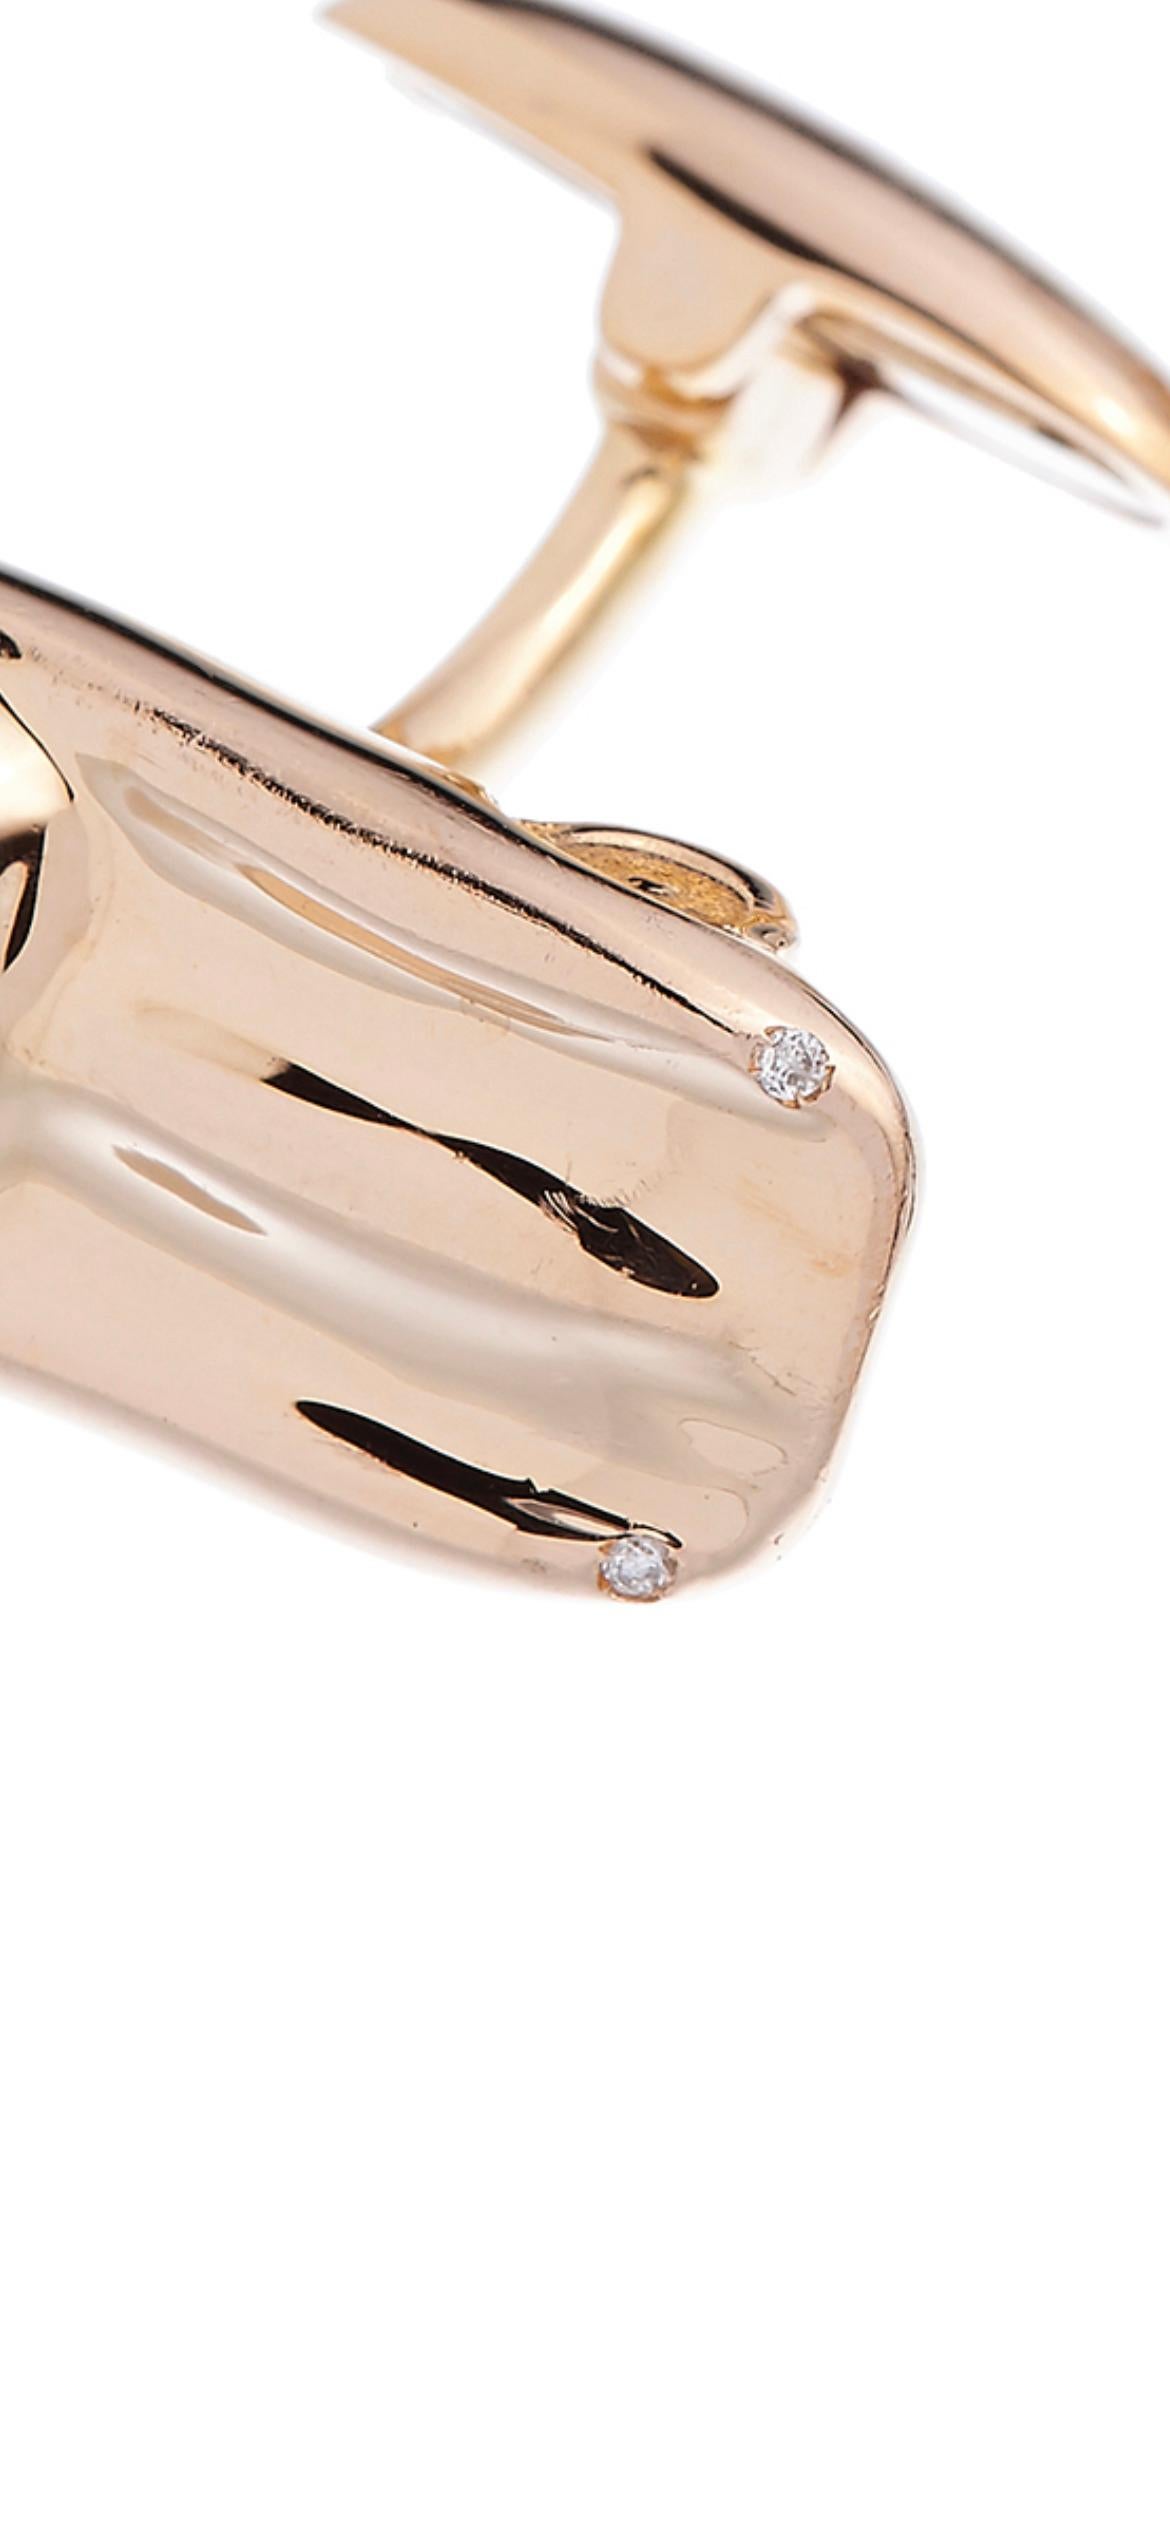 Boutons de manchette en or blanc rose 18 carats avec diamants Made in Italy Jaguar E Type Cosmic Design.
Les boutons de manchette Jaguar Type E sont en or rose et blanc 18 carats et sont sertis de n. 4 diamants, couleur F, Vvs, poids total 0,02